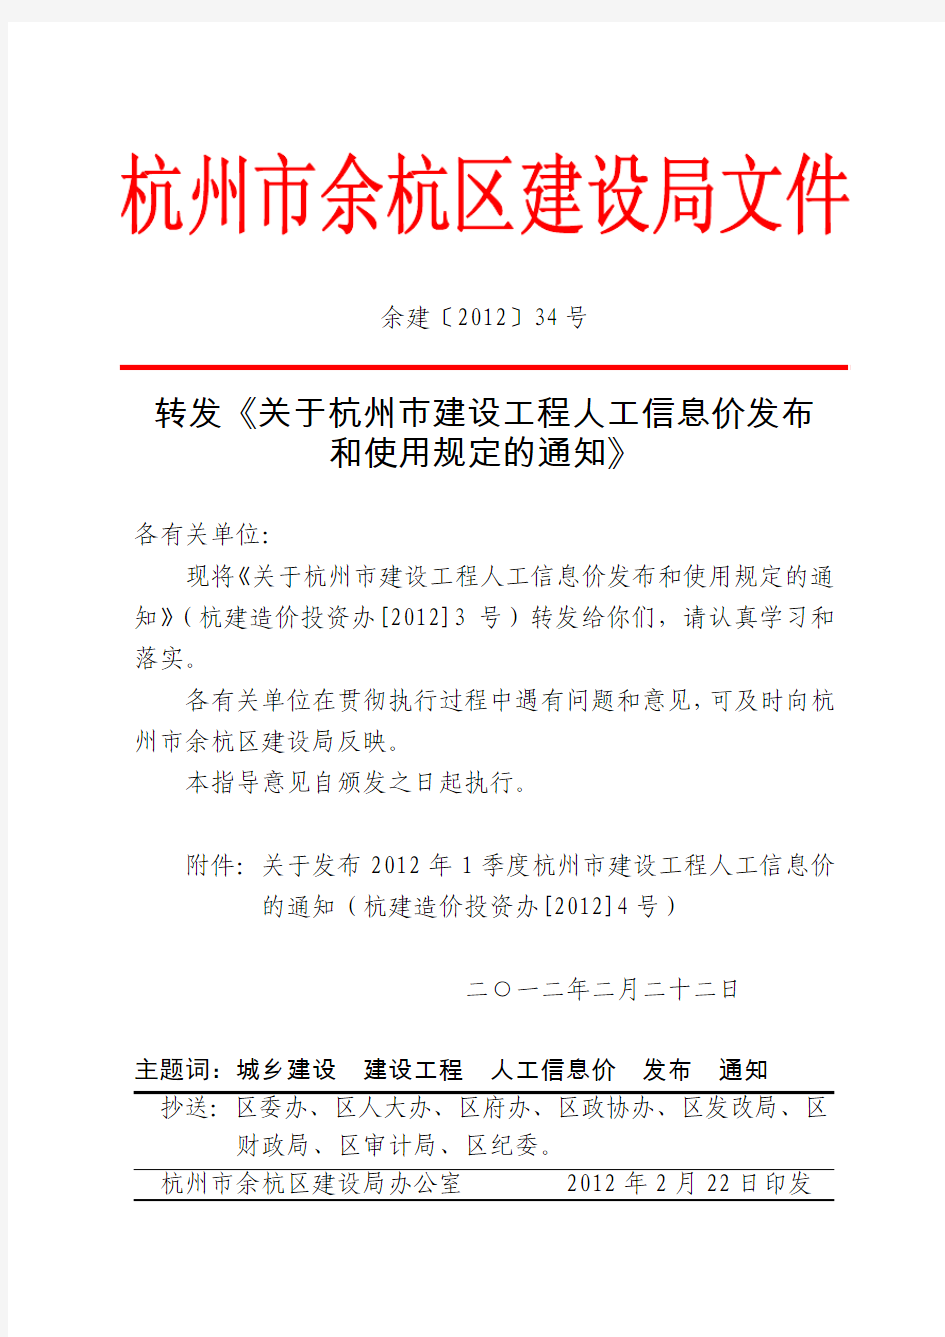 余建〔2012〕34号转发《关于杭州市建设工程人工信息发布和使用规定的通知》